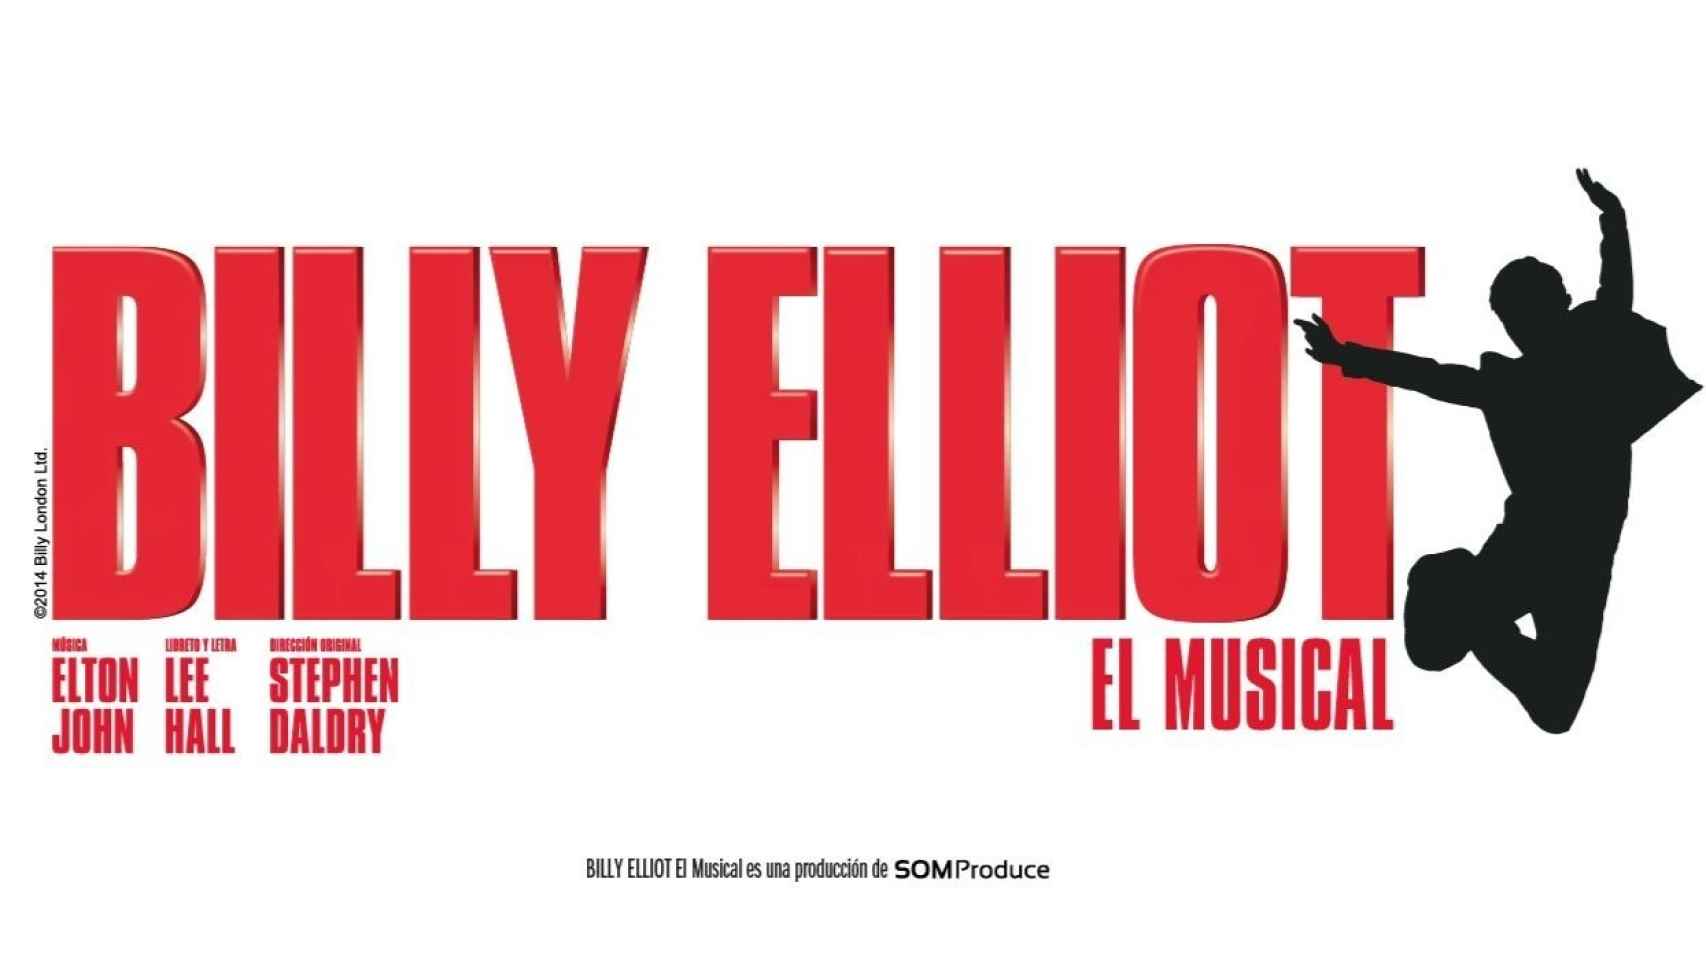 Uno de los musicales que más está triunfando esta temporada en la capital es el de Billy Elliot, el niño británico que quería ser bailarín. Compra tus entradas aquí.